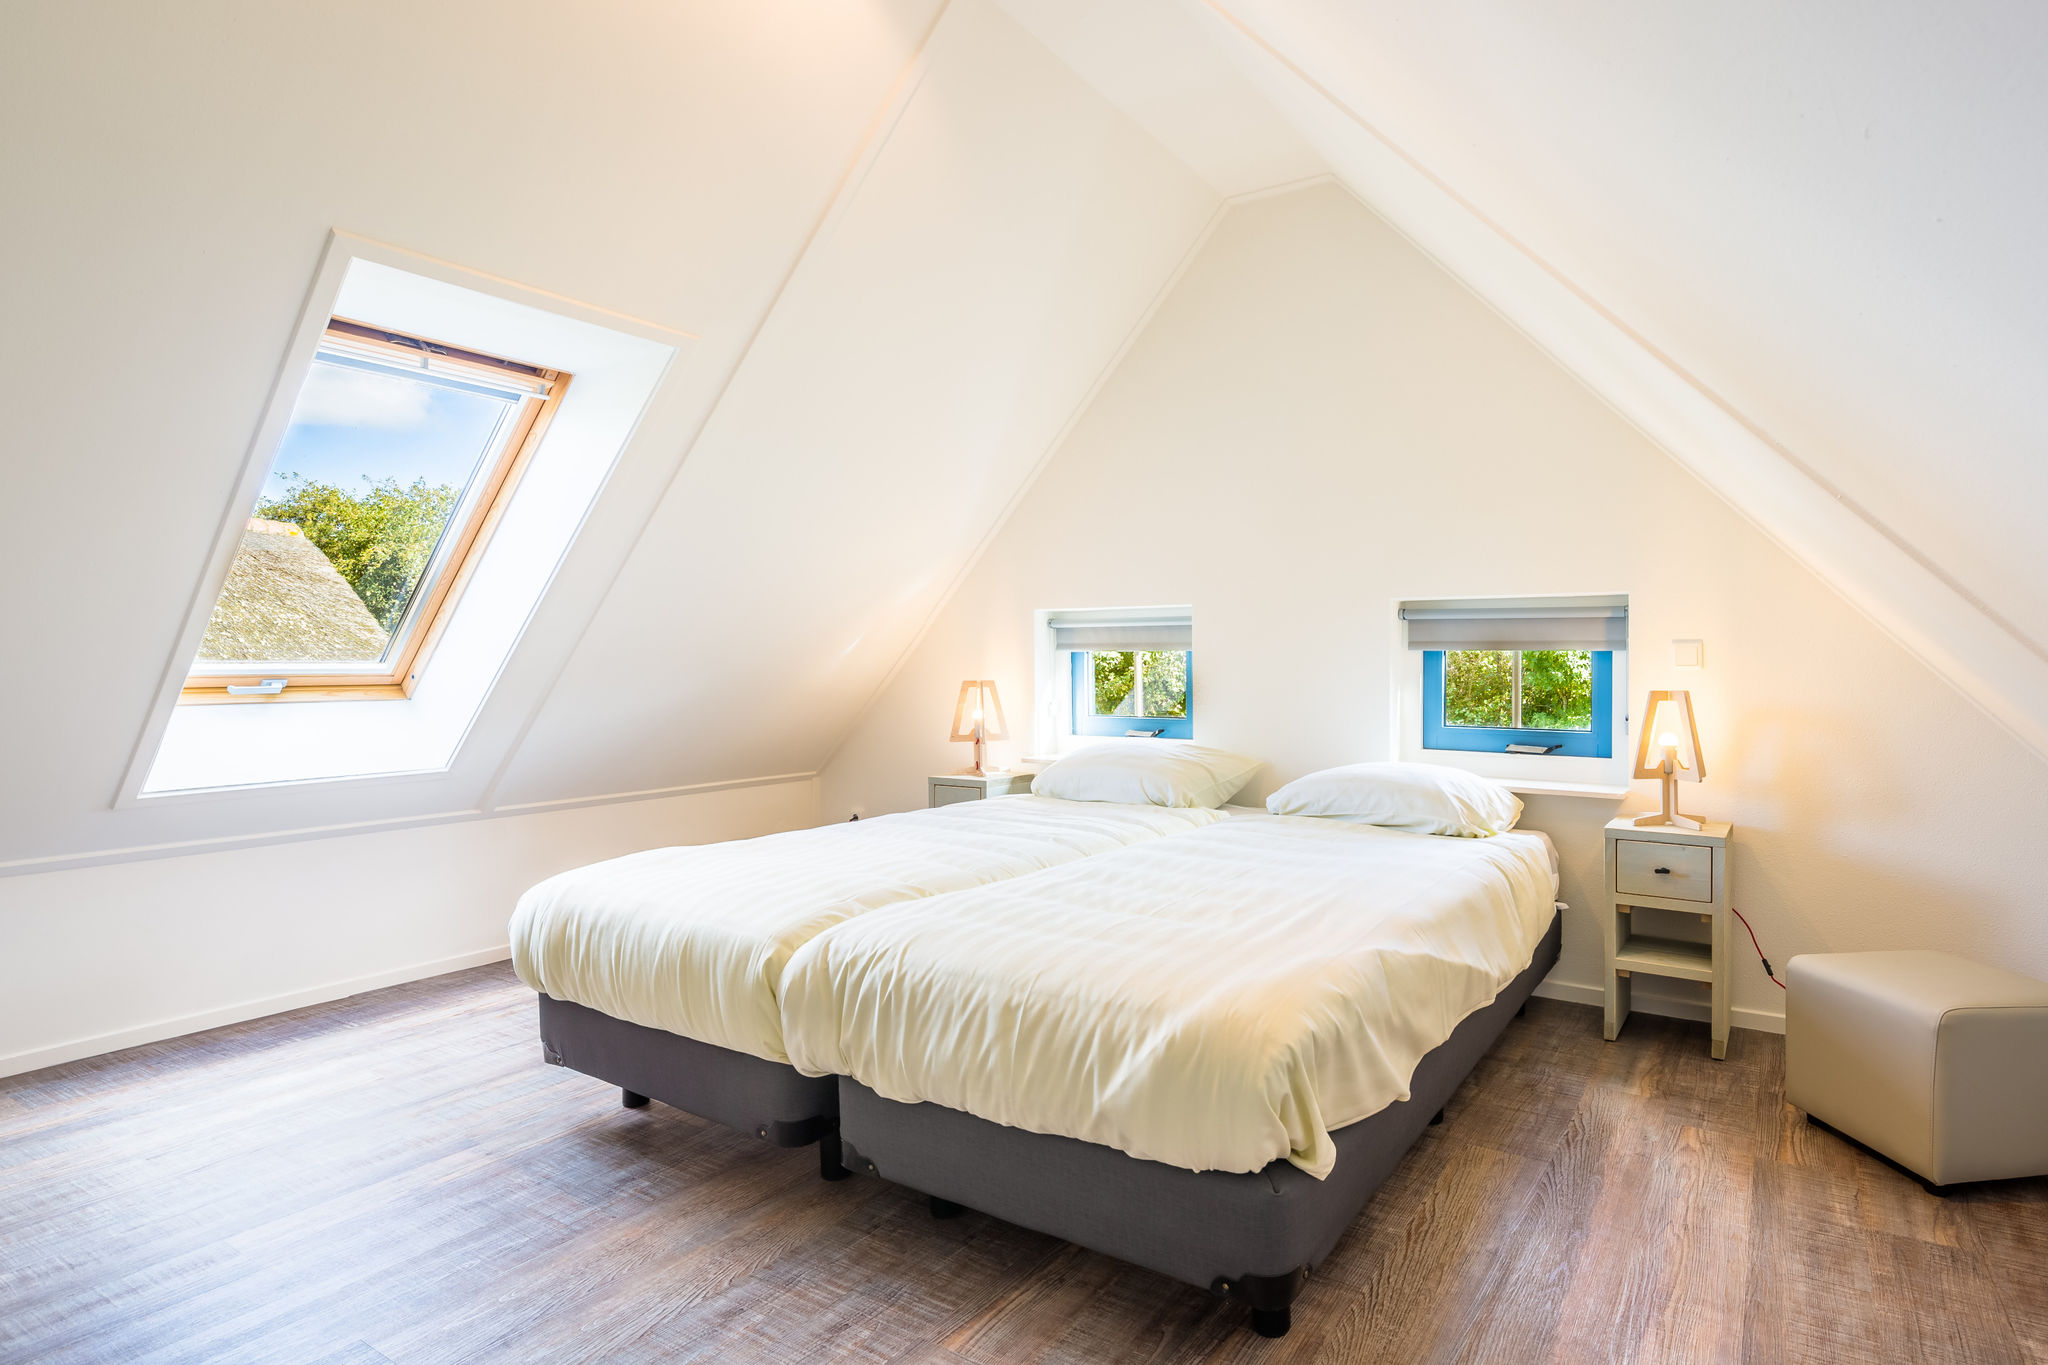 Villa in landhuisstijl met 2 badkamers 2 km van zee op Texel